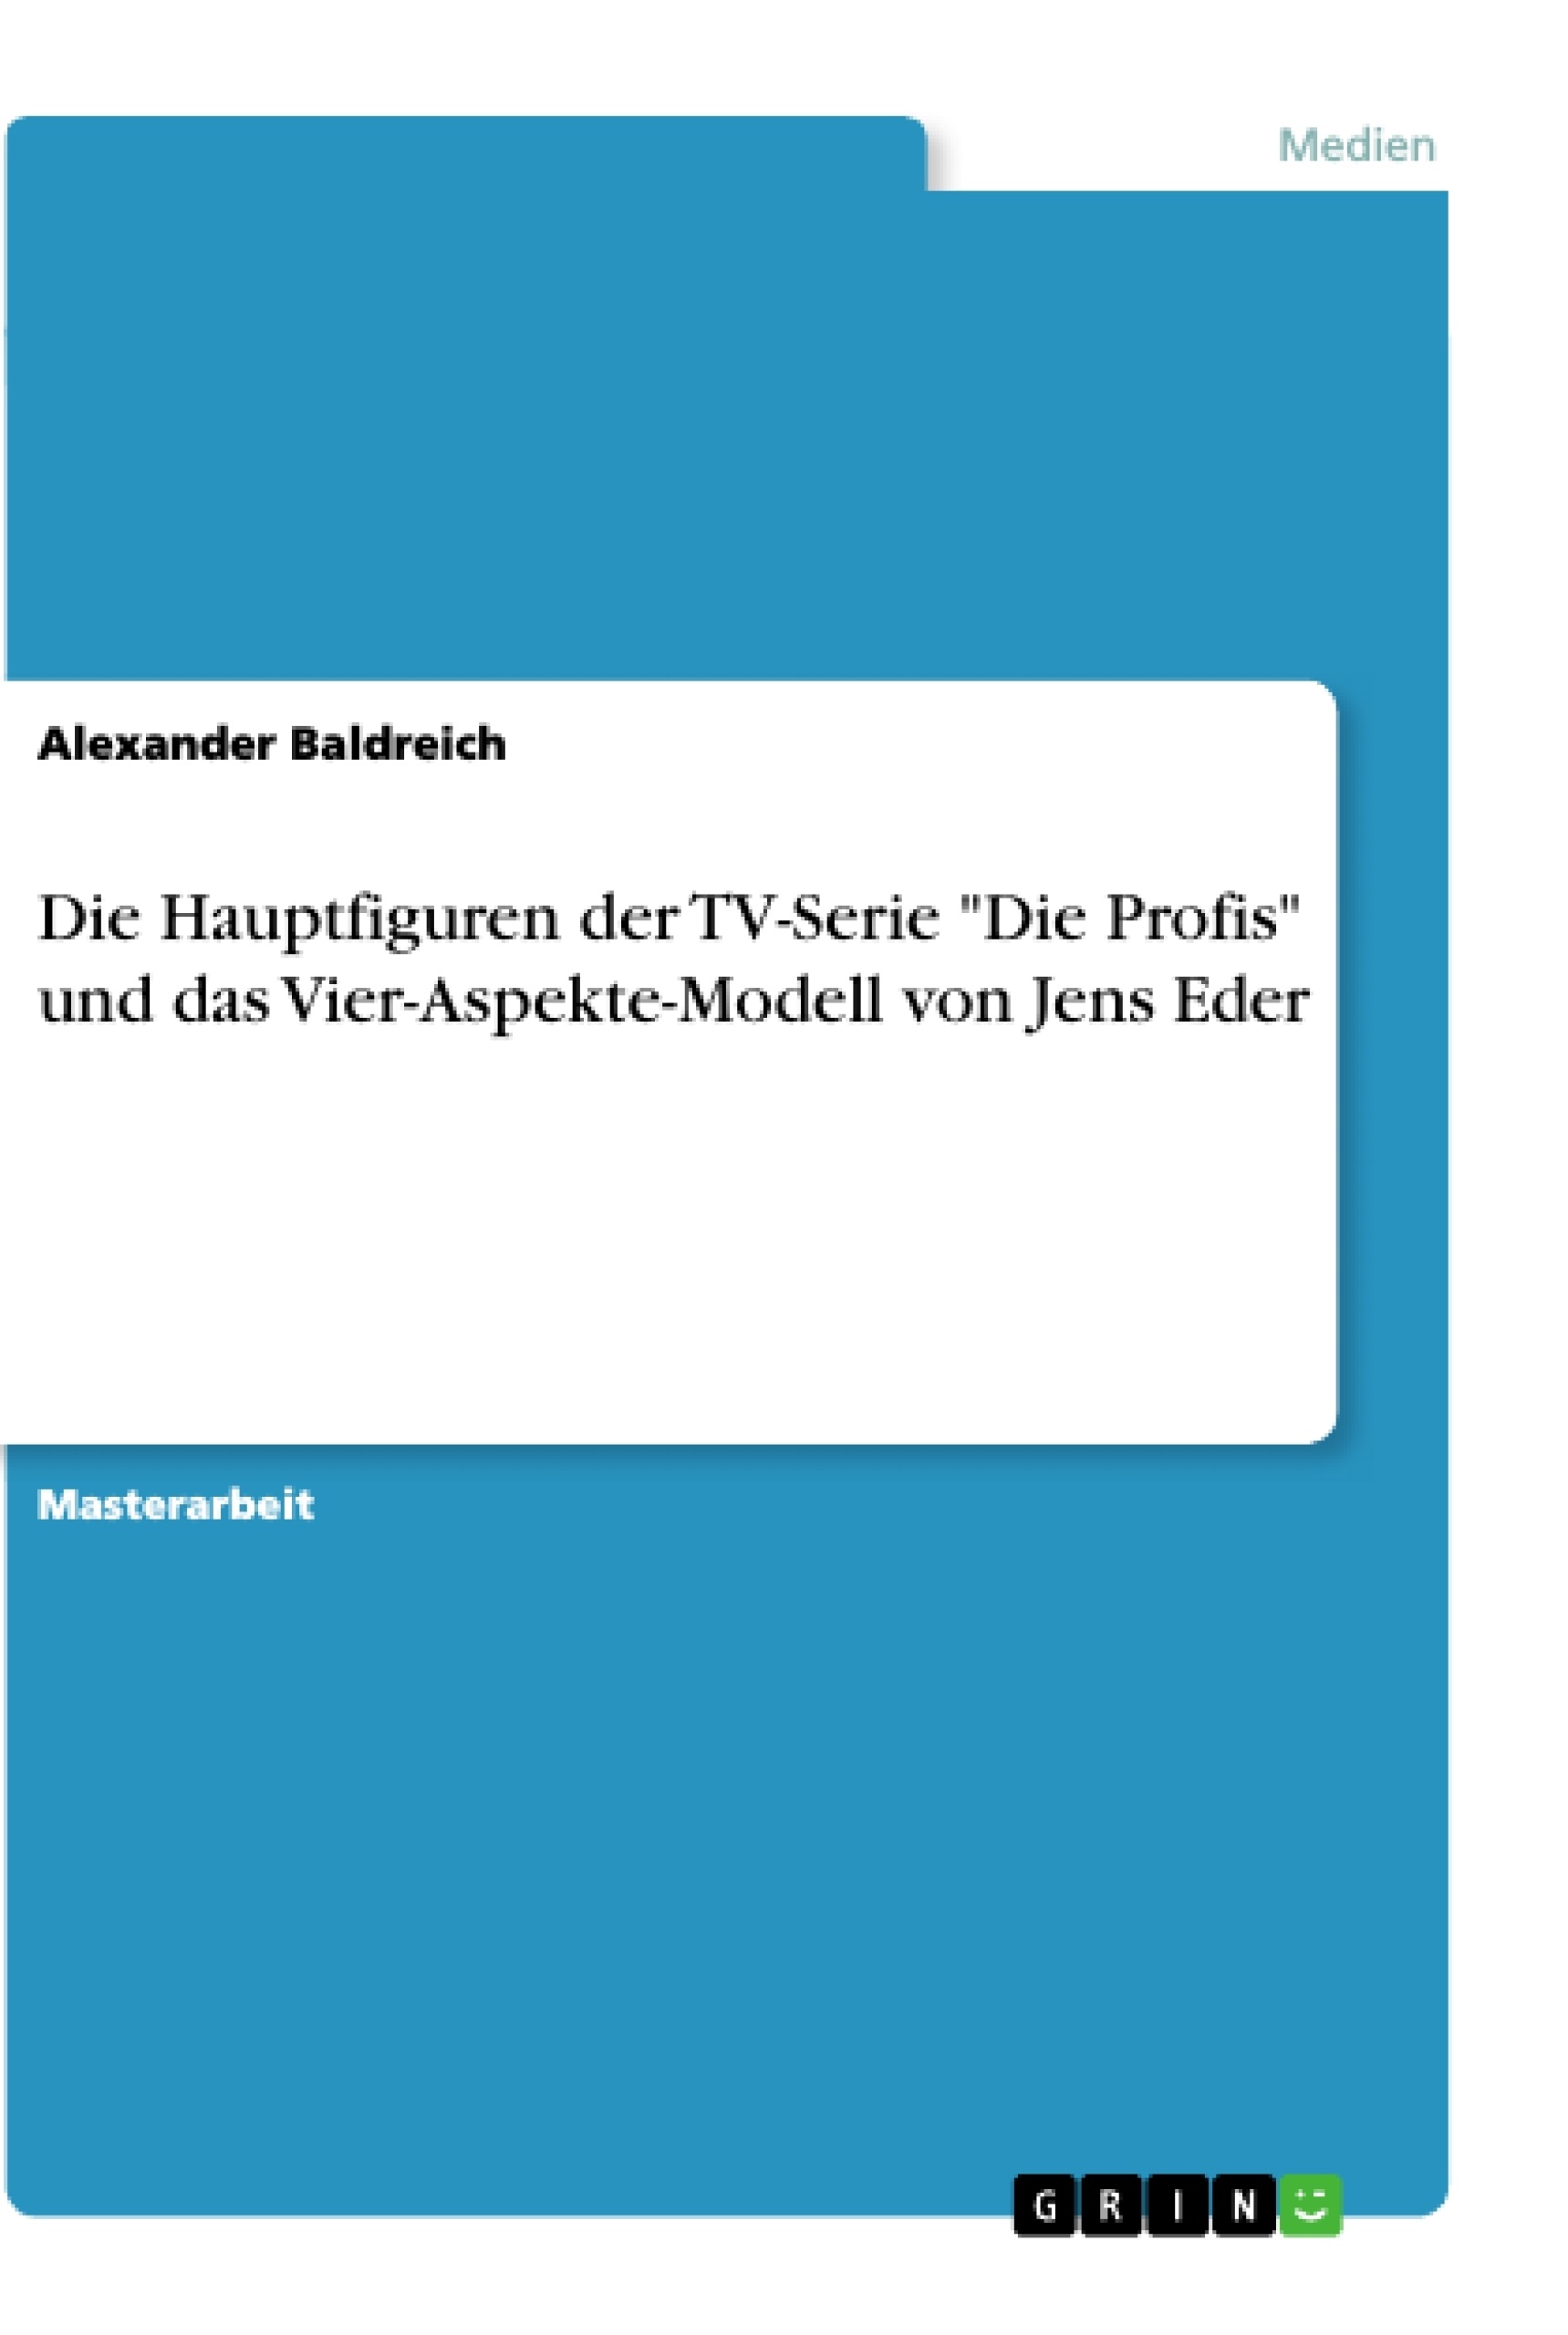 Title: Die Hauptfiguren der TV-Serie "Die Profis" und das Vier-Aspekte-Modell von Jens Eder